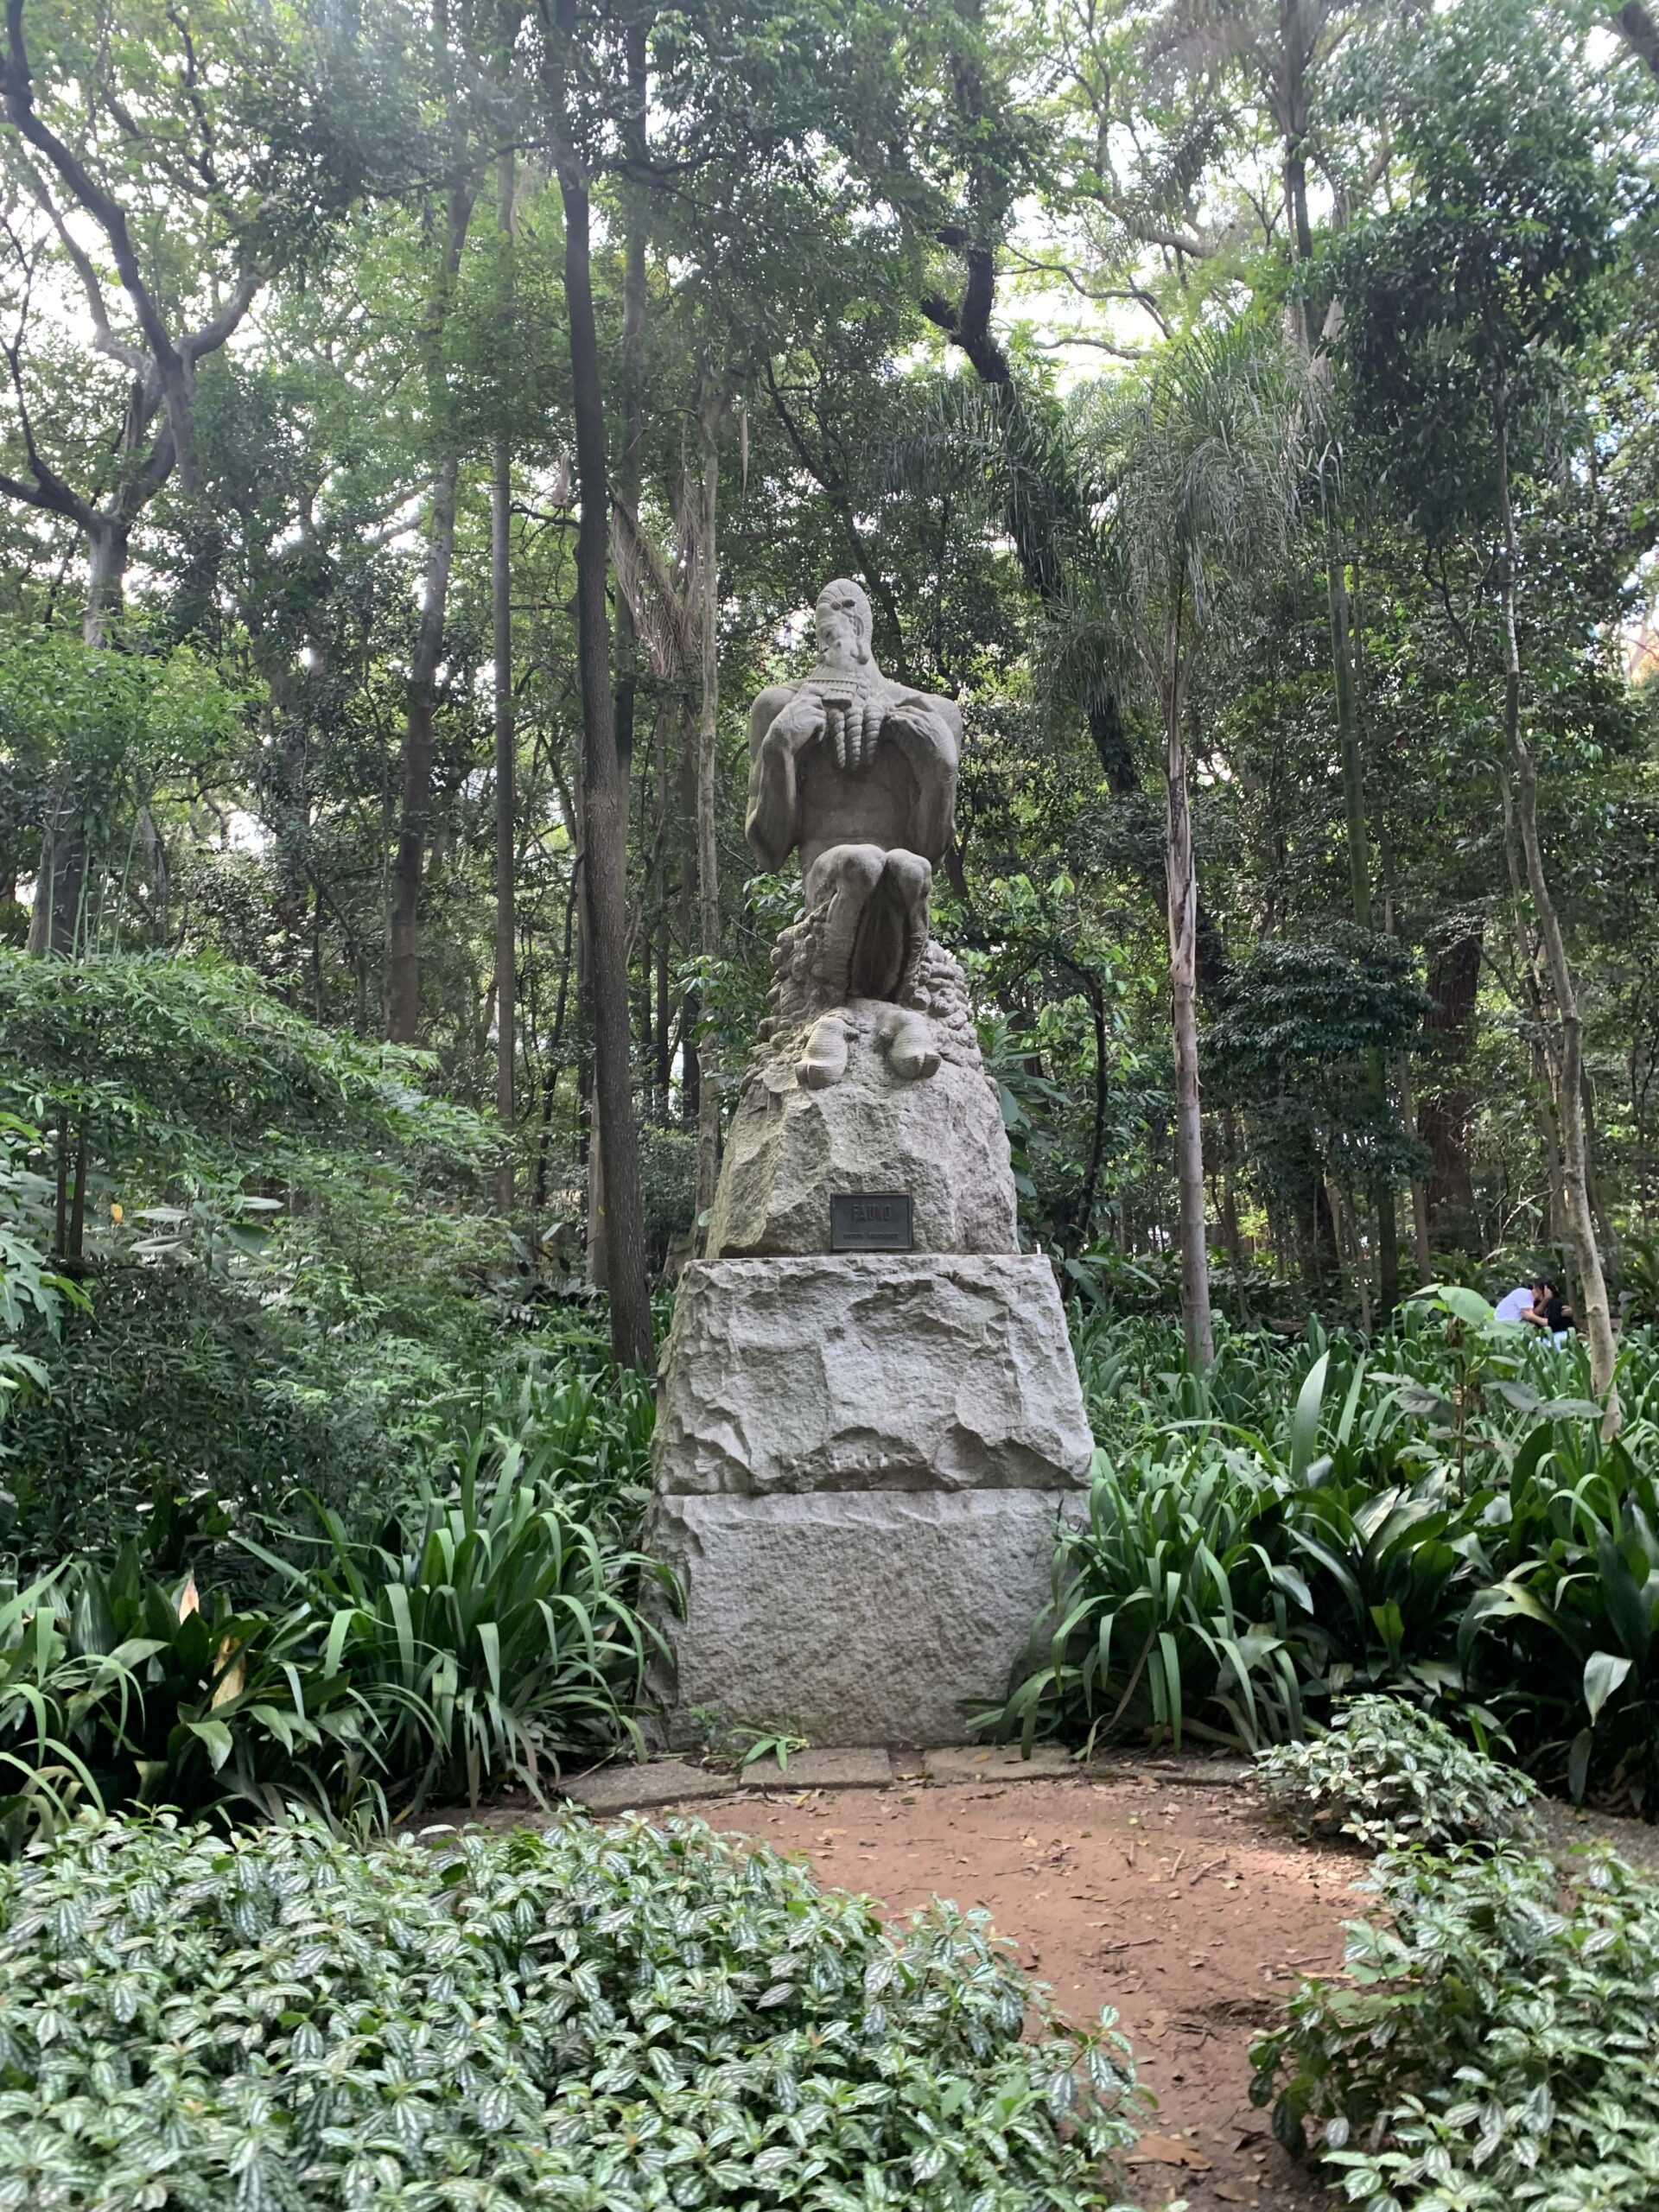 parque Trianon in São Paulo